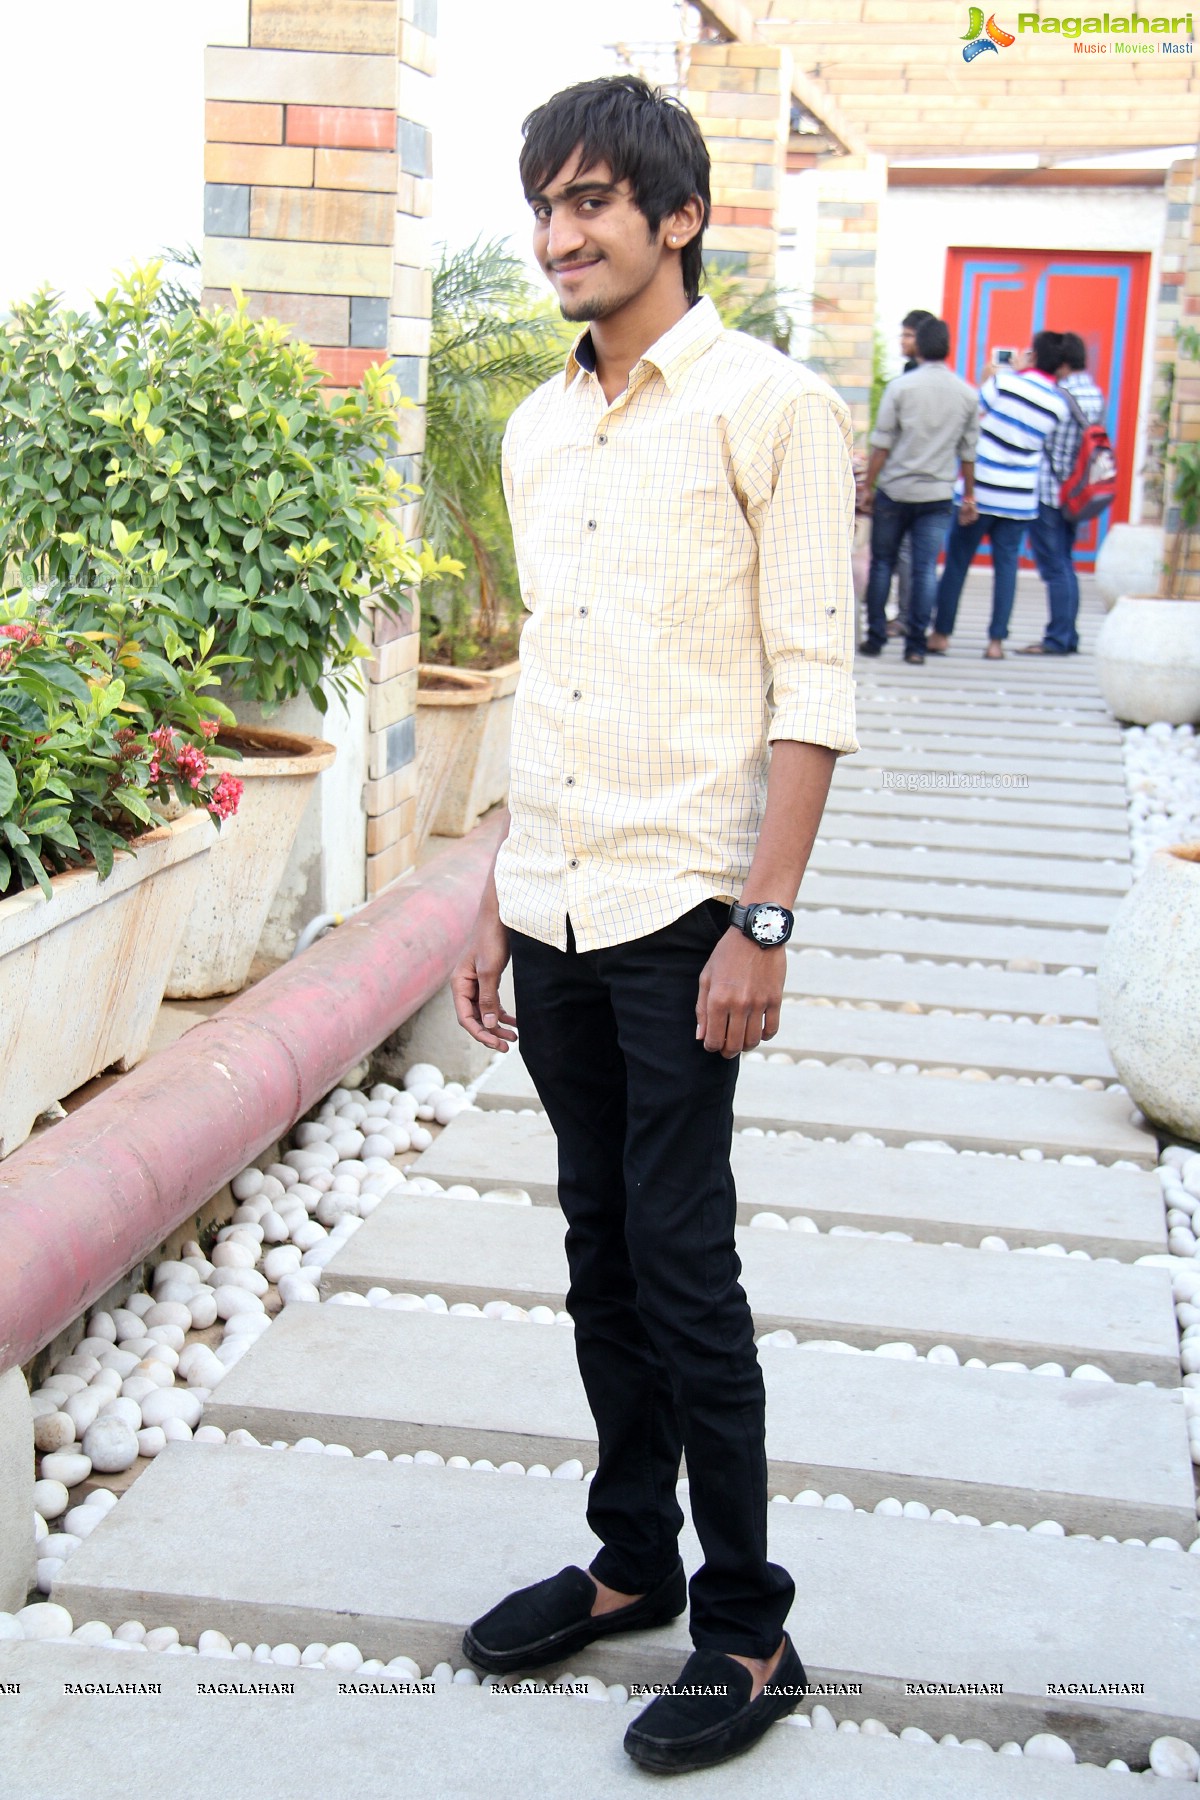 Sriram Jaju's 18th Birthday at The Veneto Pasta Bar, Hyderabad